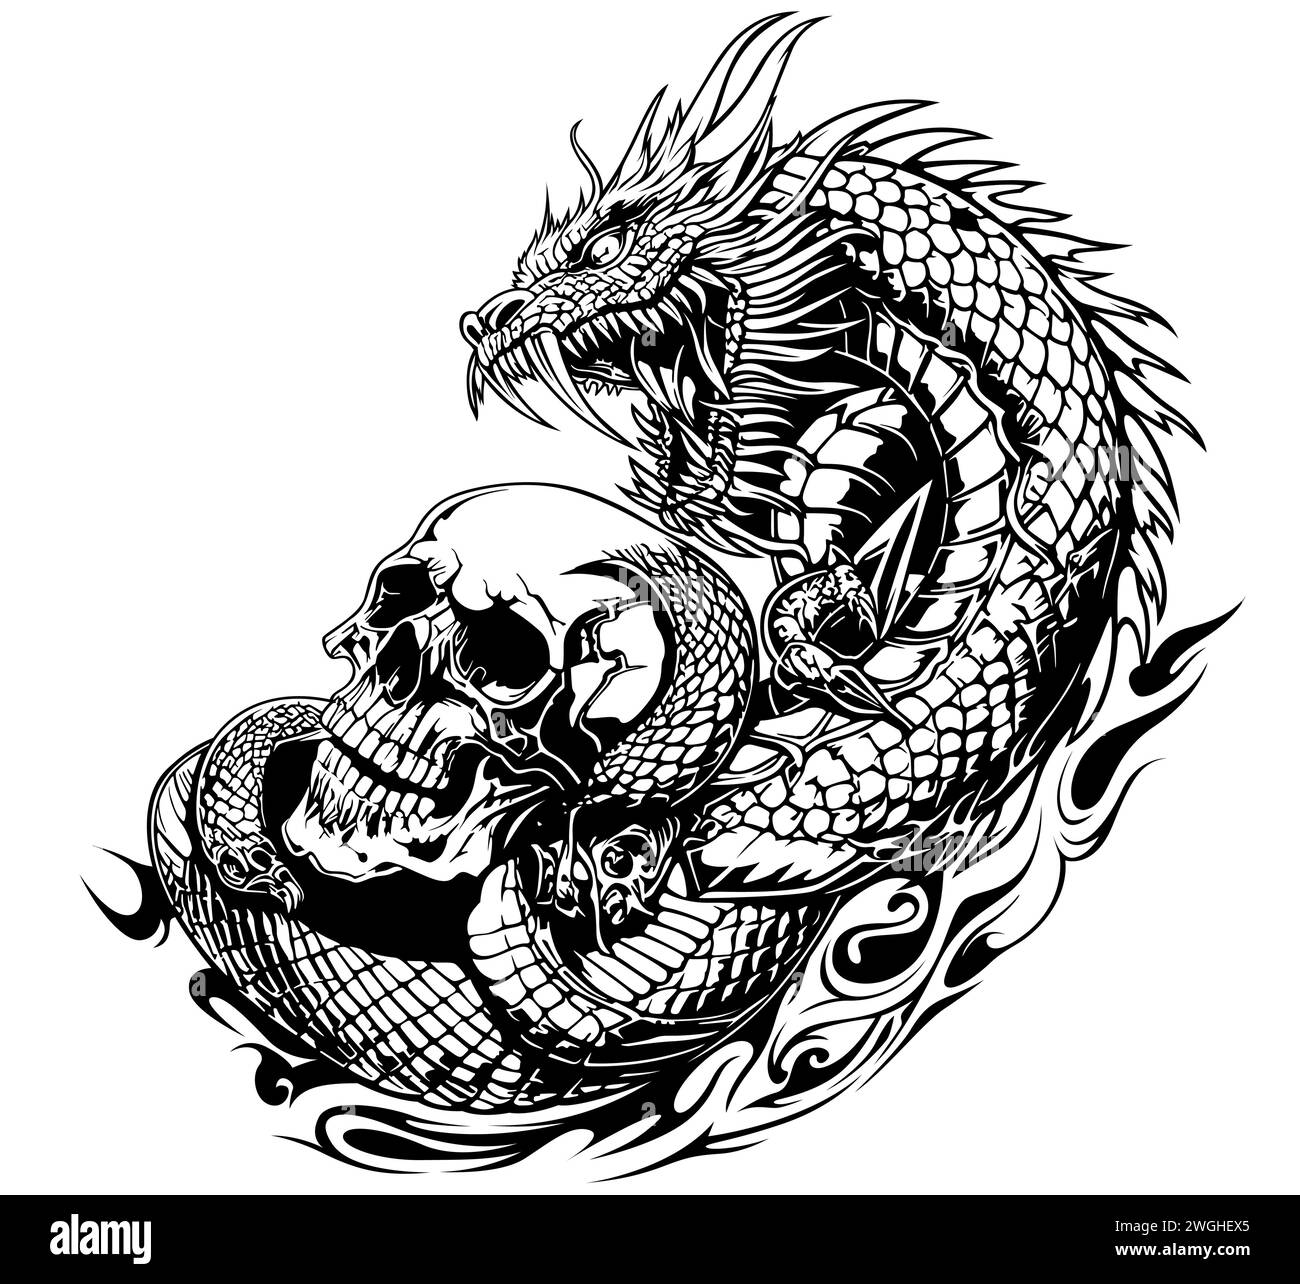 Dessin d'un dragon enroulé autour d'un crâne humain Illustration de Vecteur